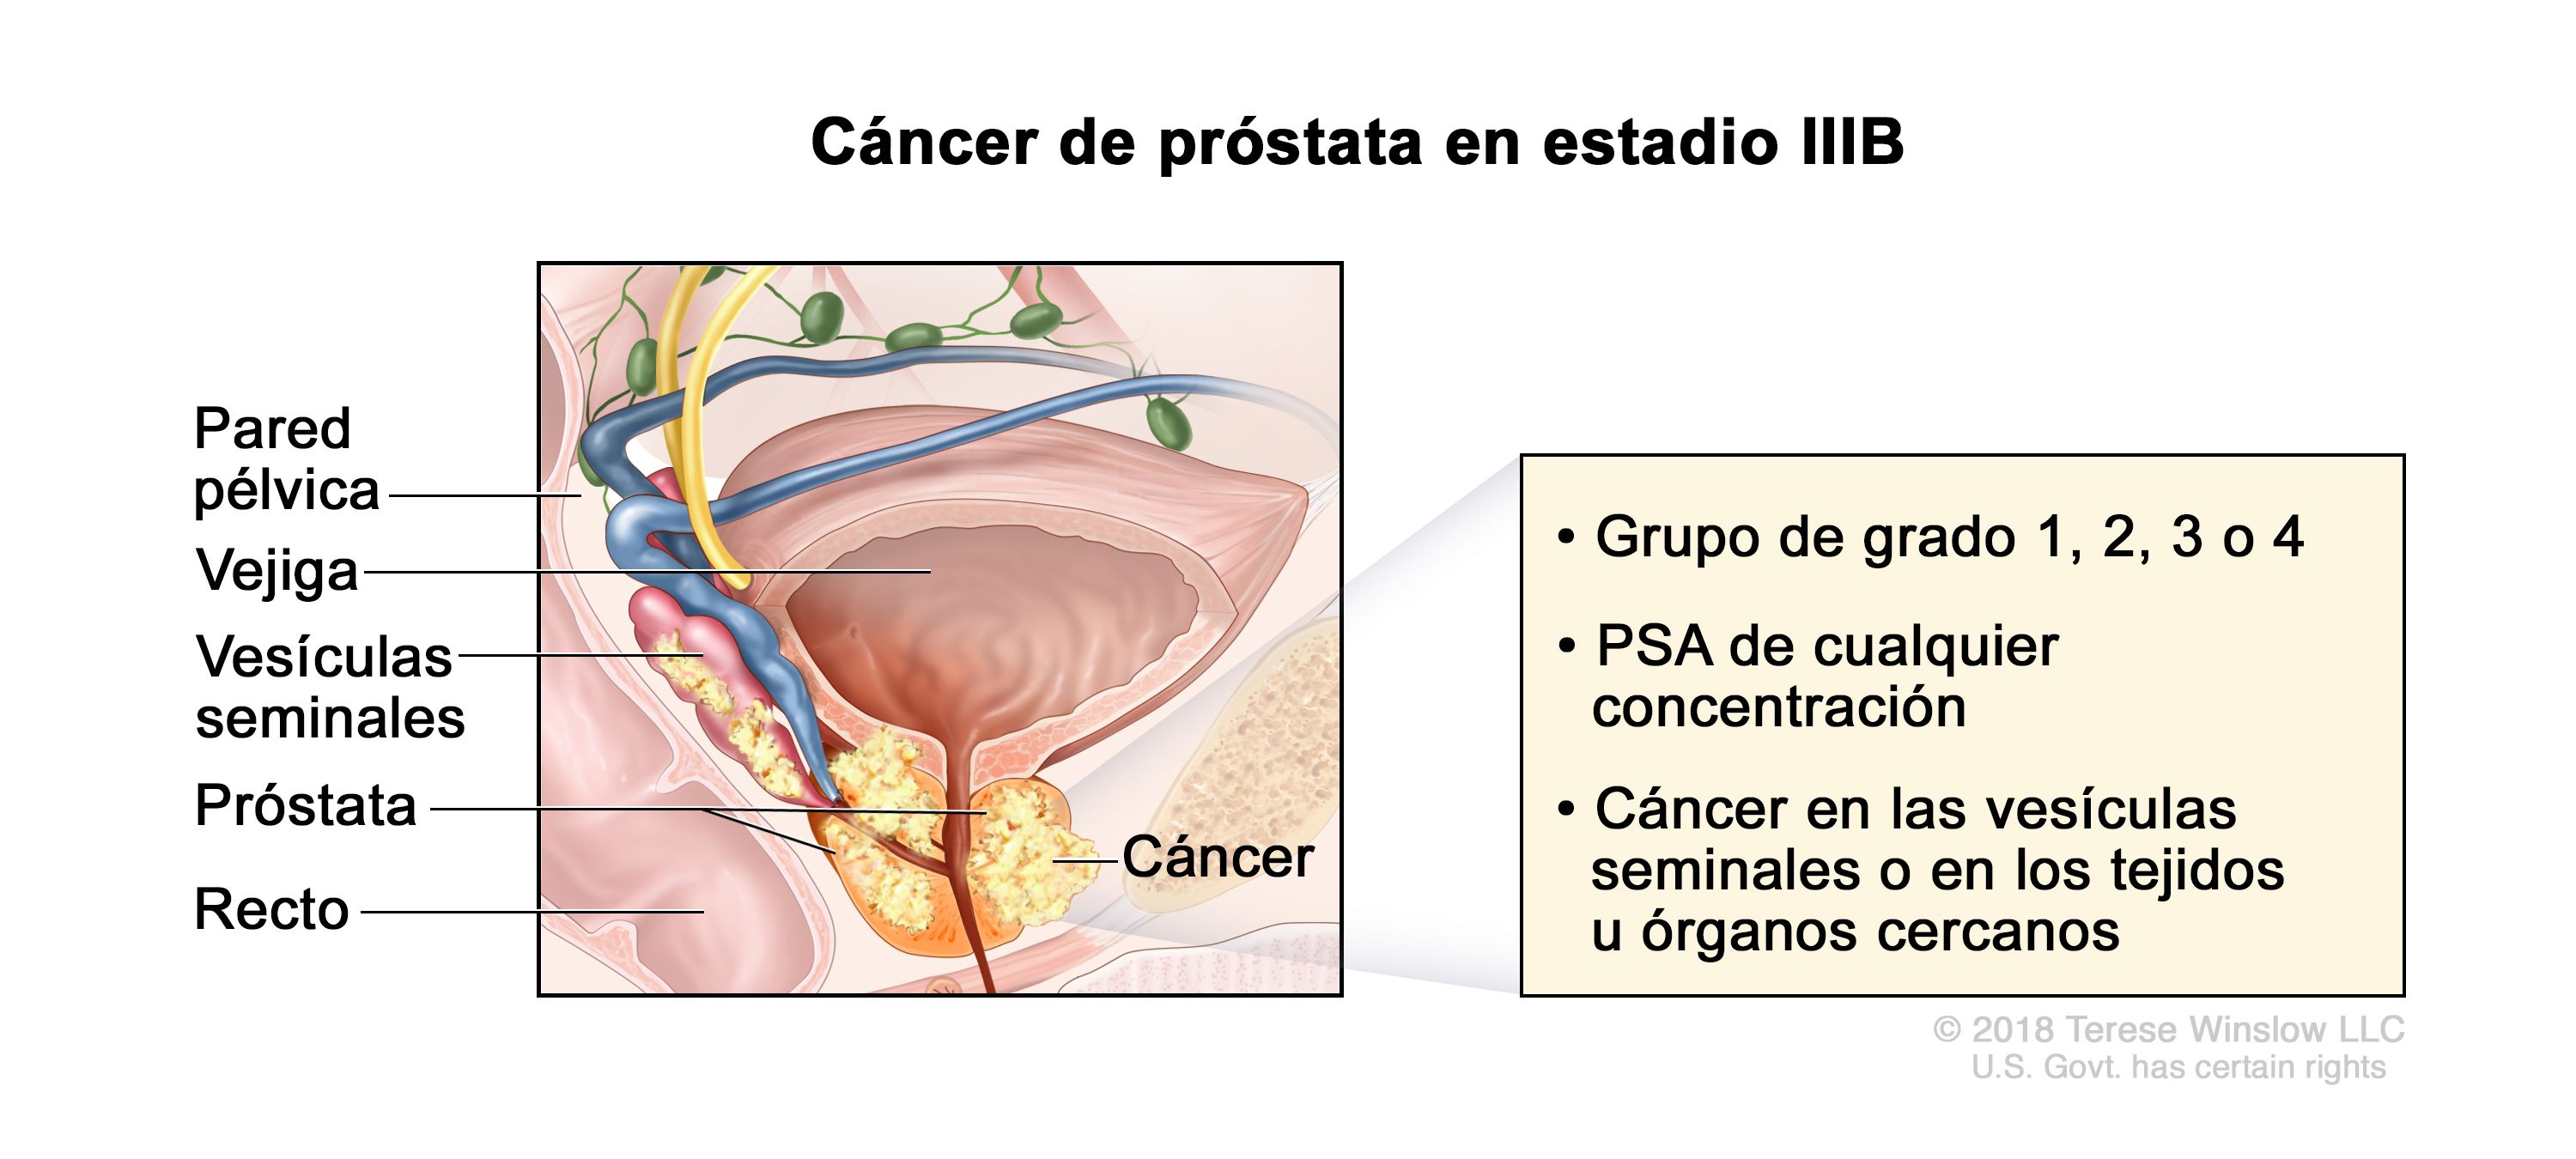 cancer de prostata estadio 3 supervivencia